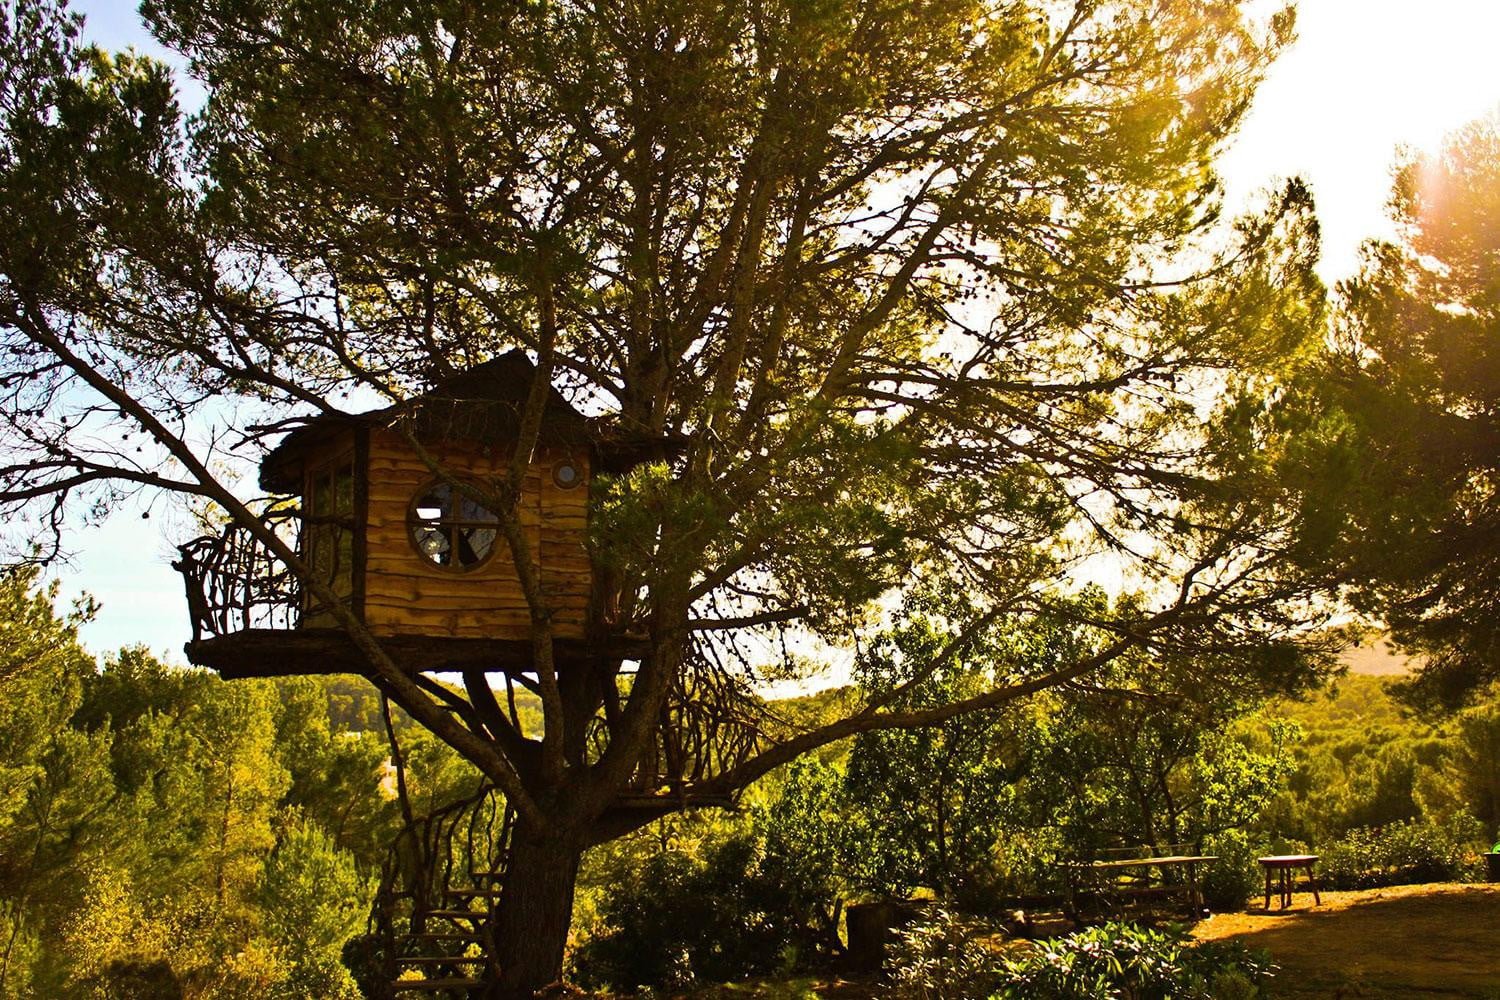 Домик на дереве. Роб де Вос дом на дереве. Необычный дом на дереве. Домик под деревом. Эстетичный домик на дереве.